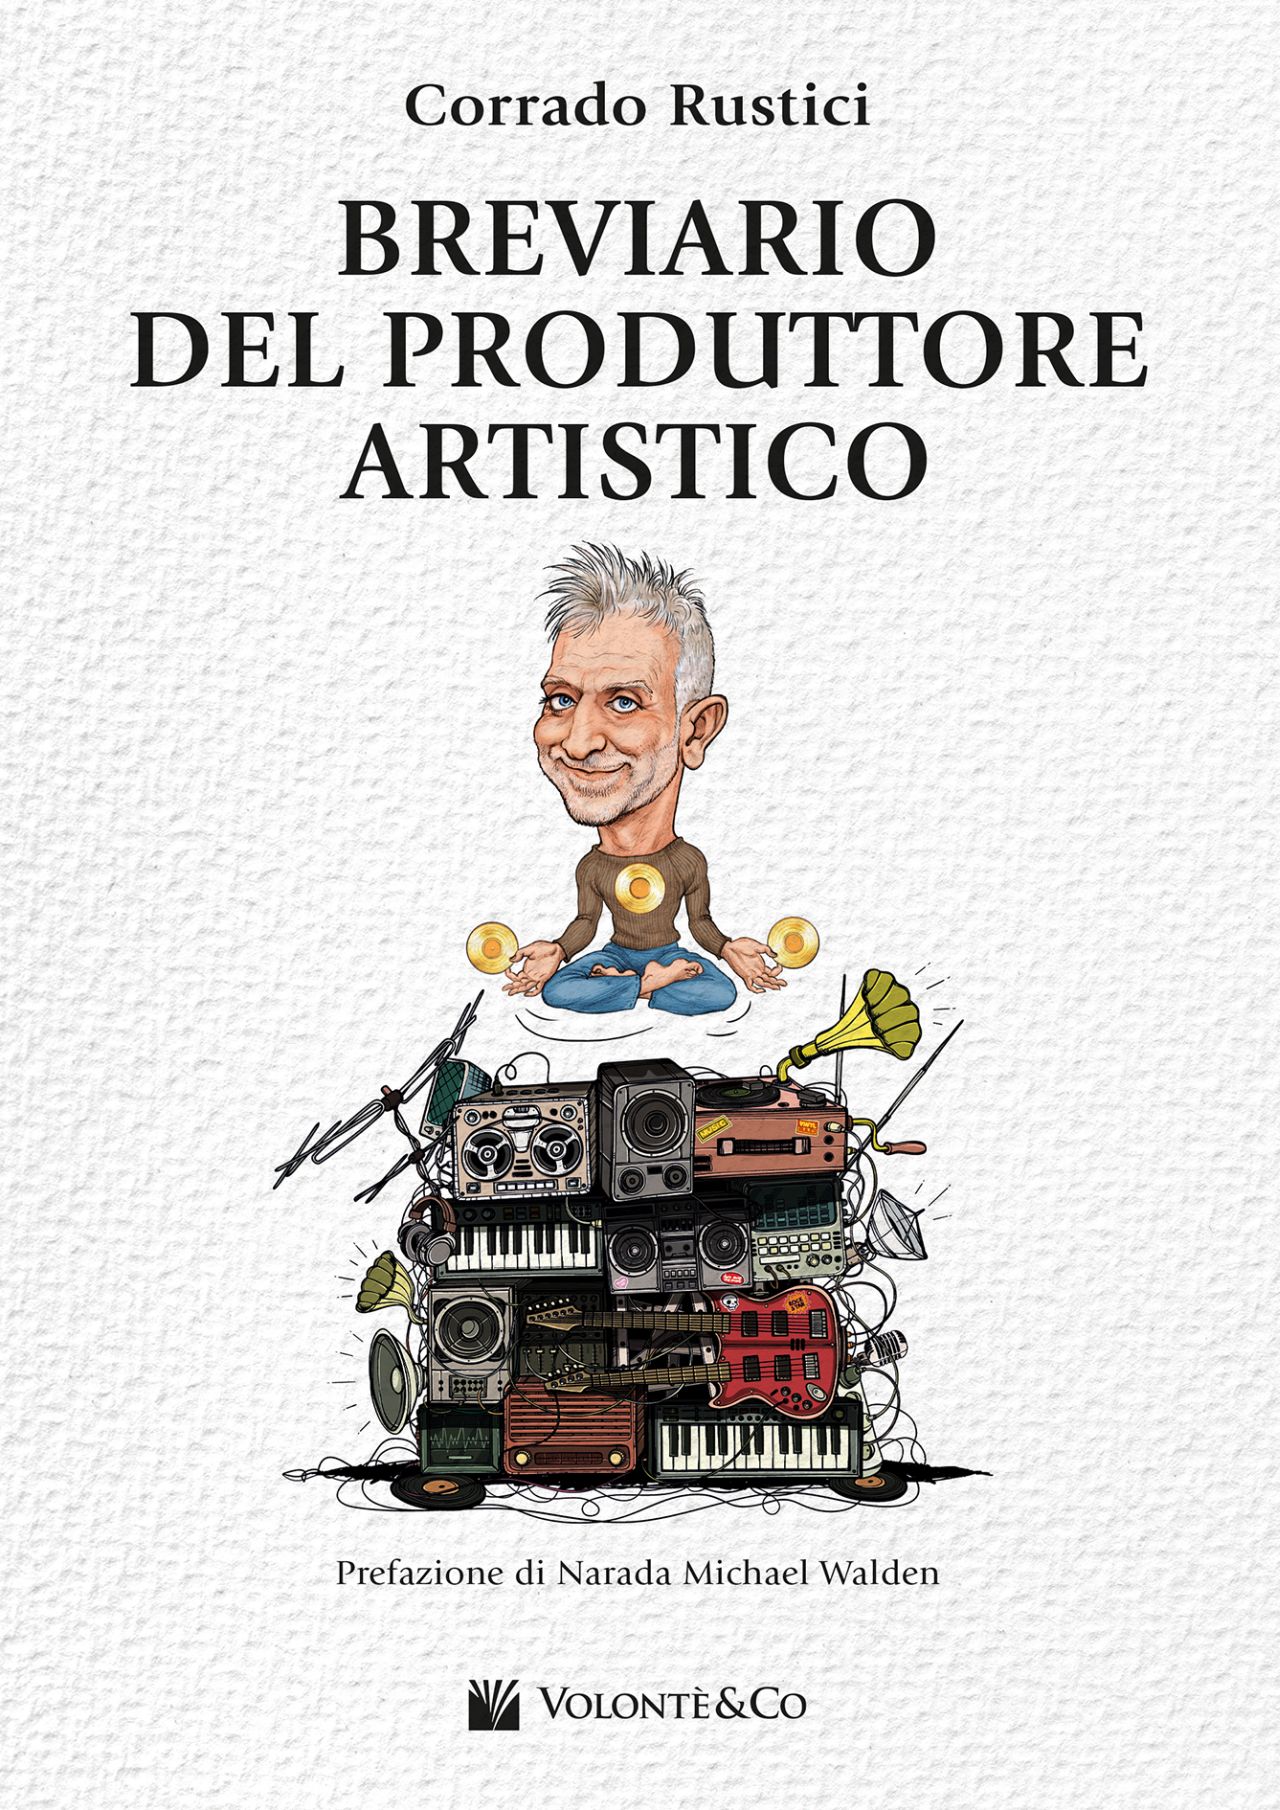 “Breviario del produttore artistico” è il primo libro del chitarrista e produttore discografico Corrado Rustici